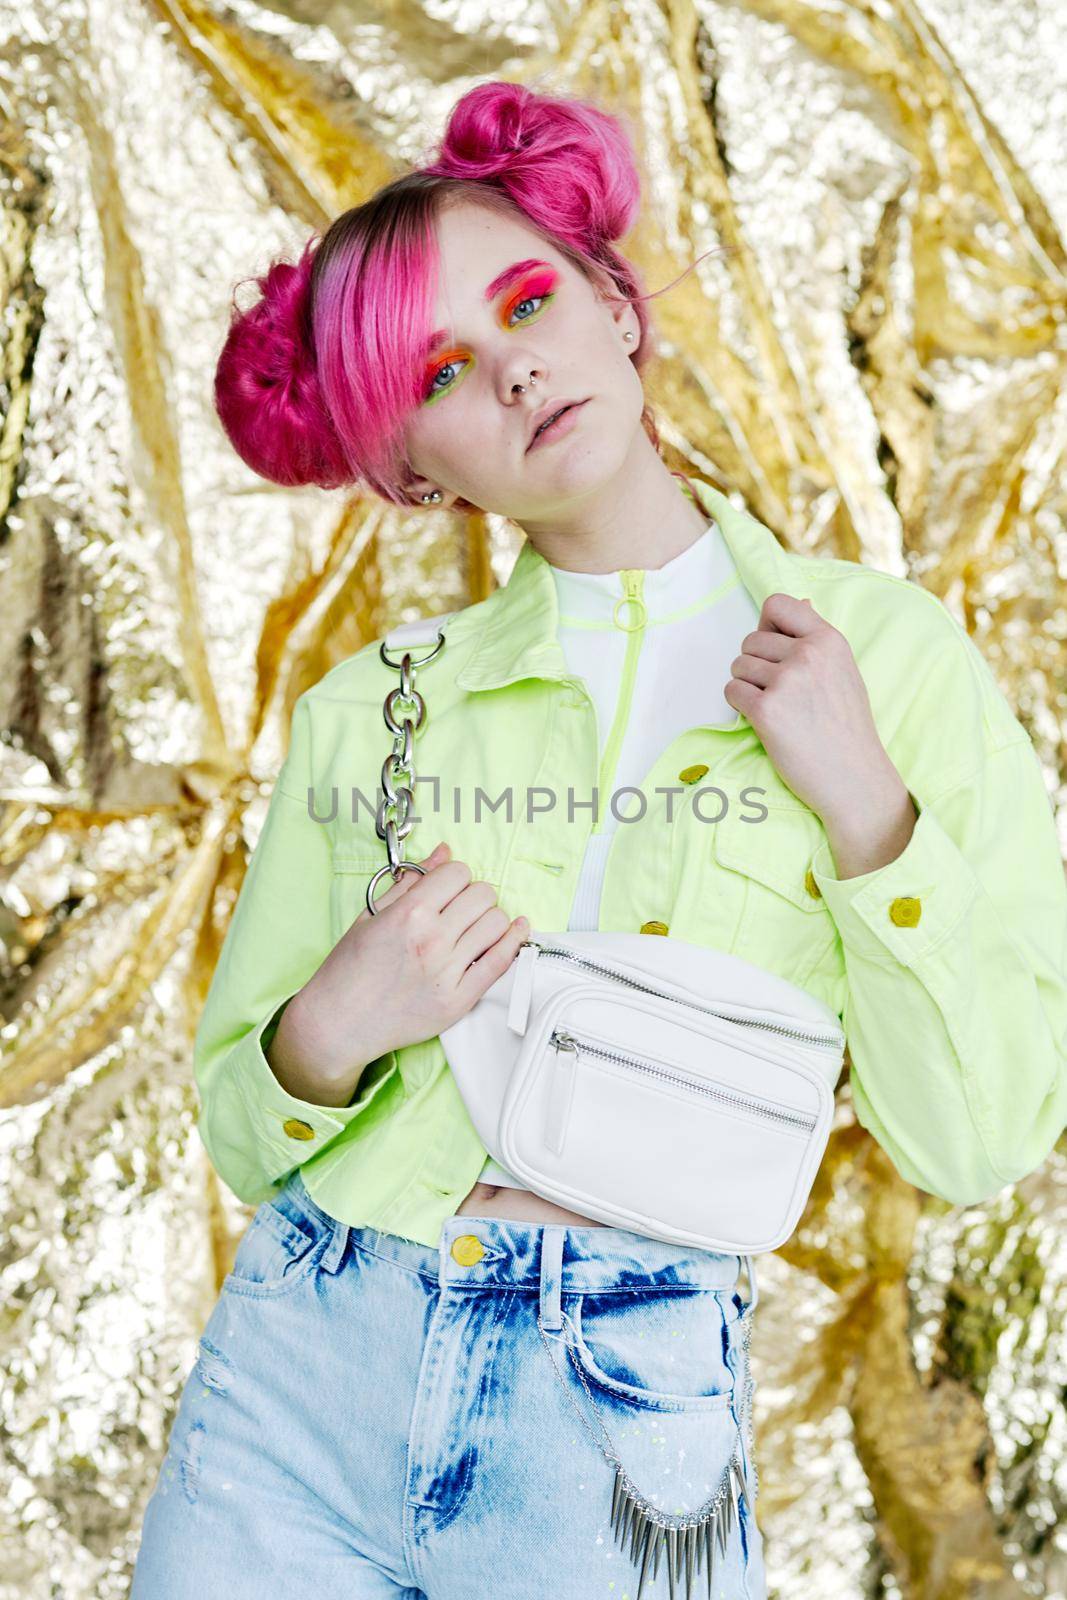 pretty woman pink hair posing fashion studio. High quality photo